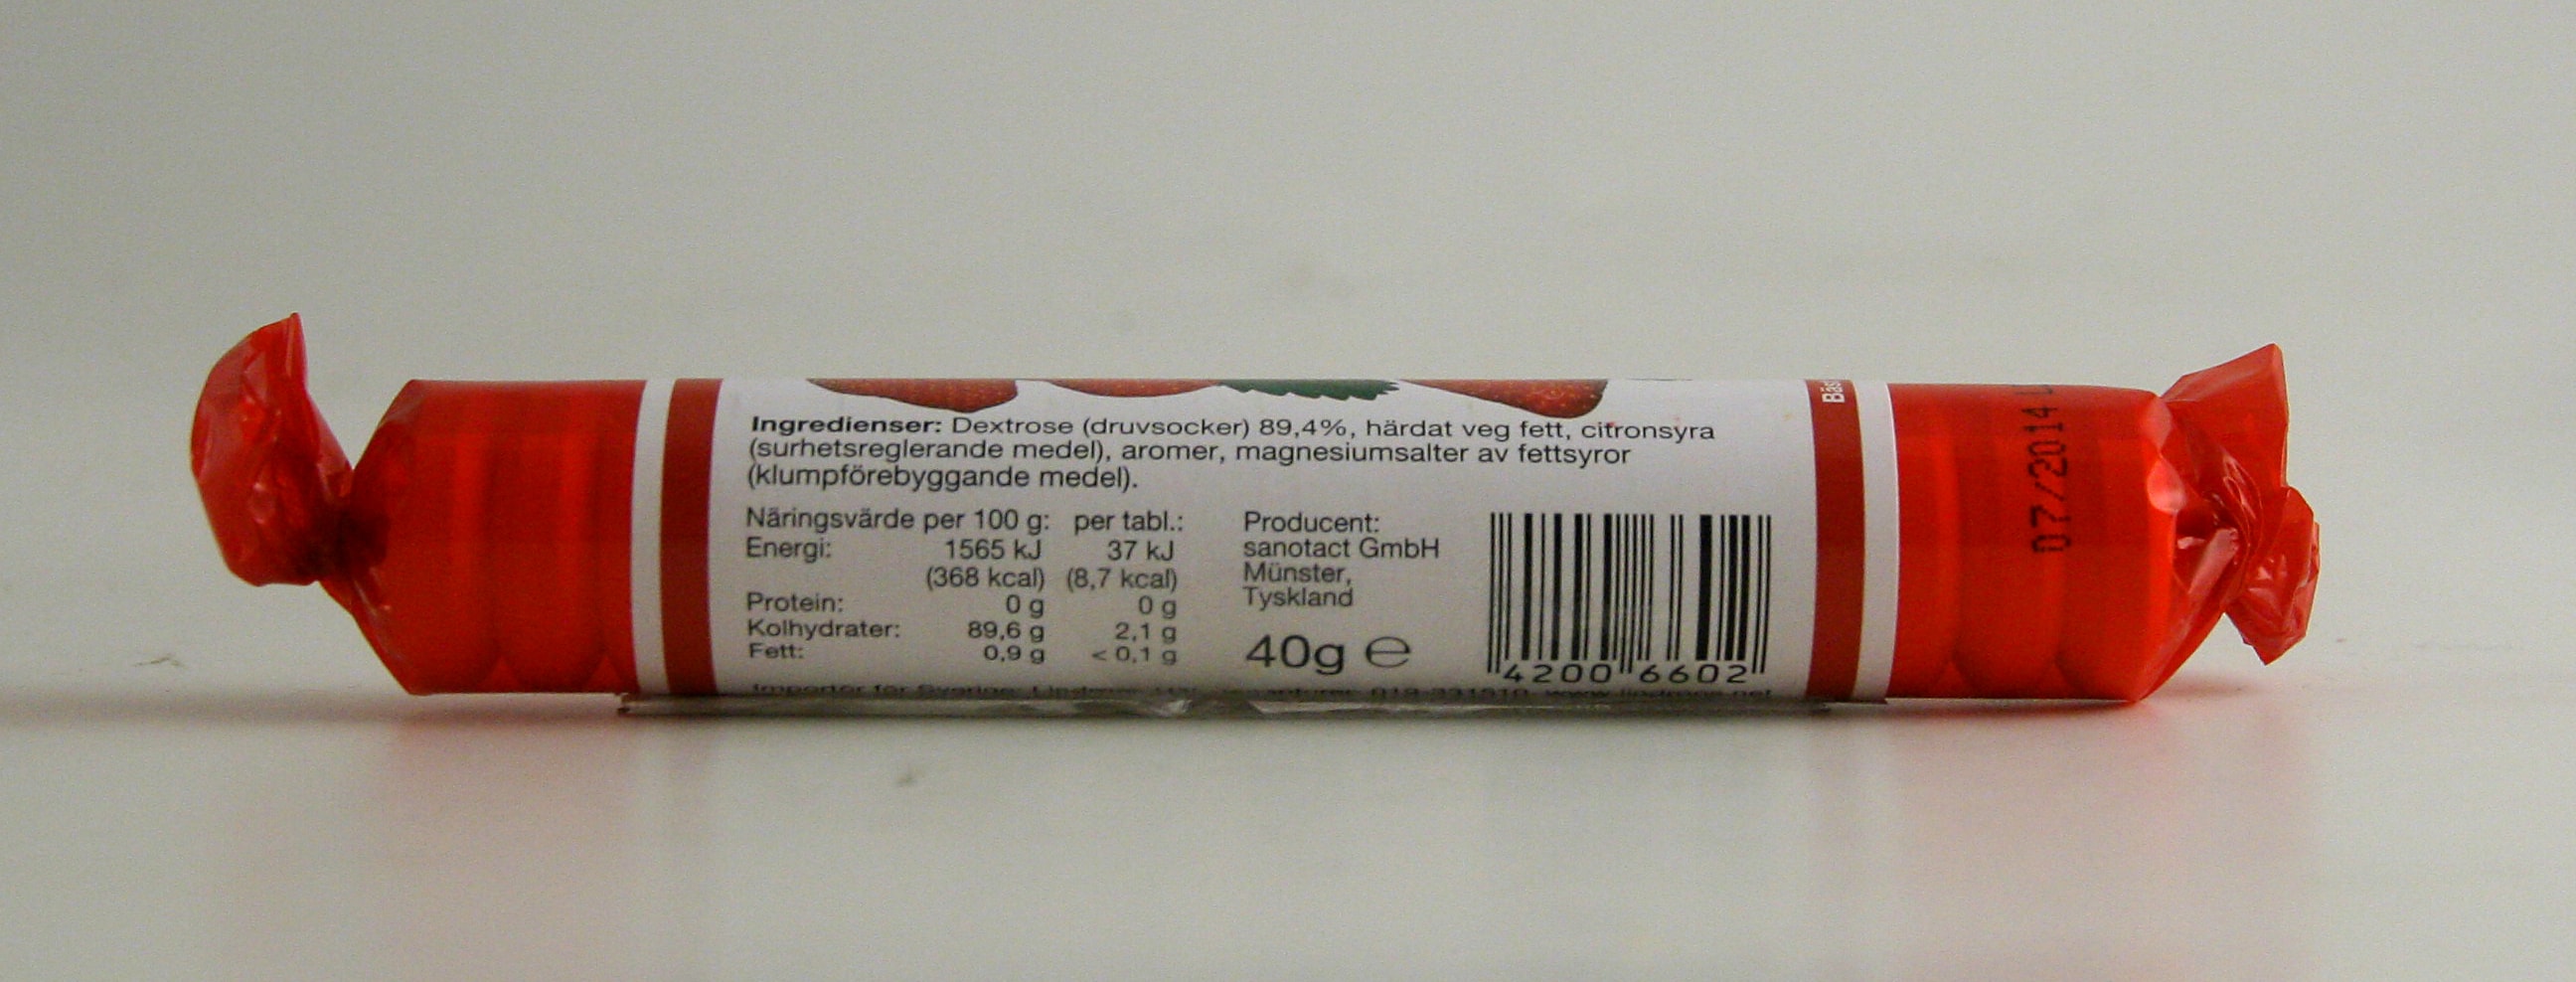 Druvsocker jordgubb 17 tabletter